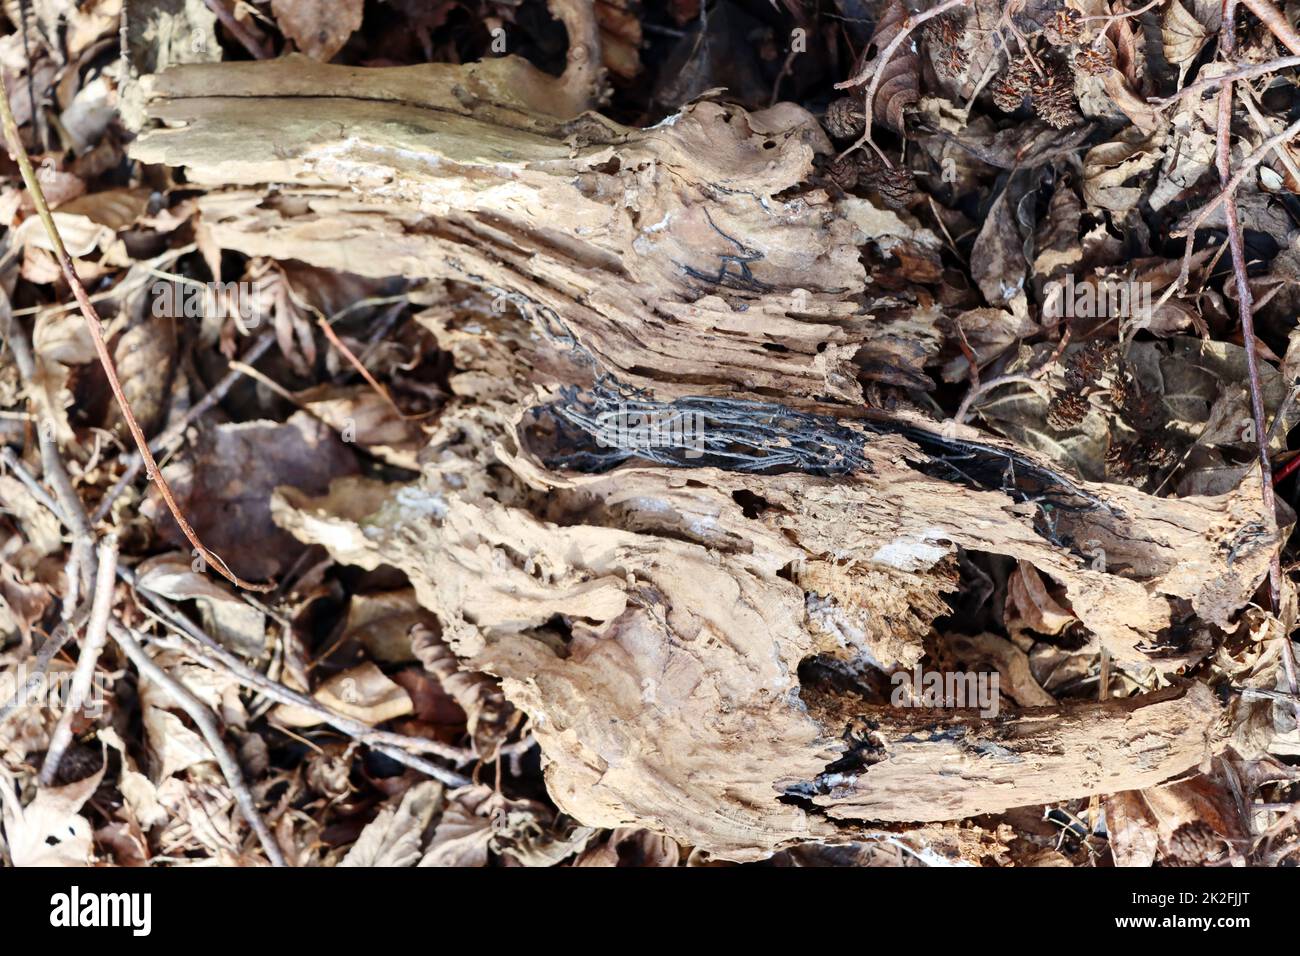 Hallimasch-Rhizomorphen bilden eine Skelett-artige Struktur in einem StÃ¼ck Totholz Foto de stock